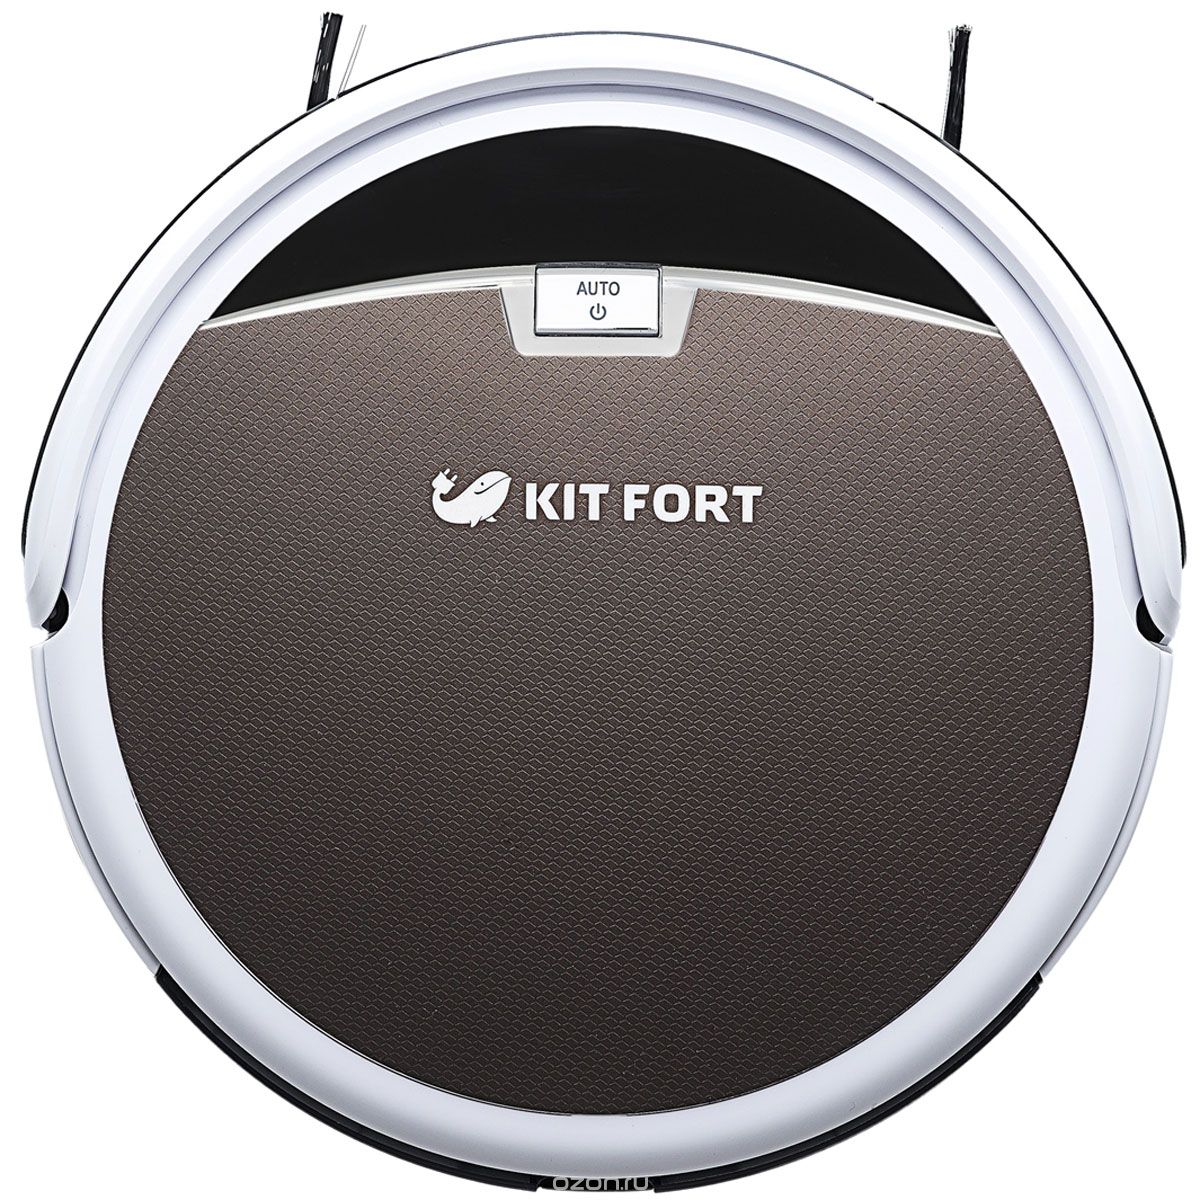 Kitfort KT-519-4, Brown -